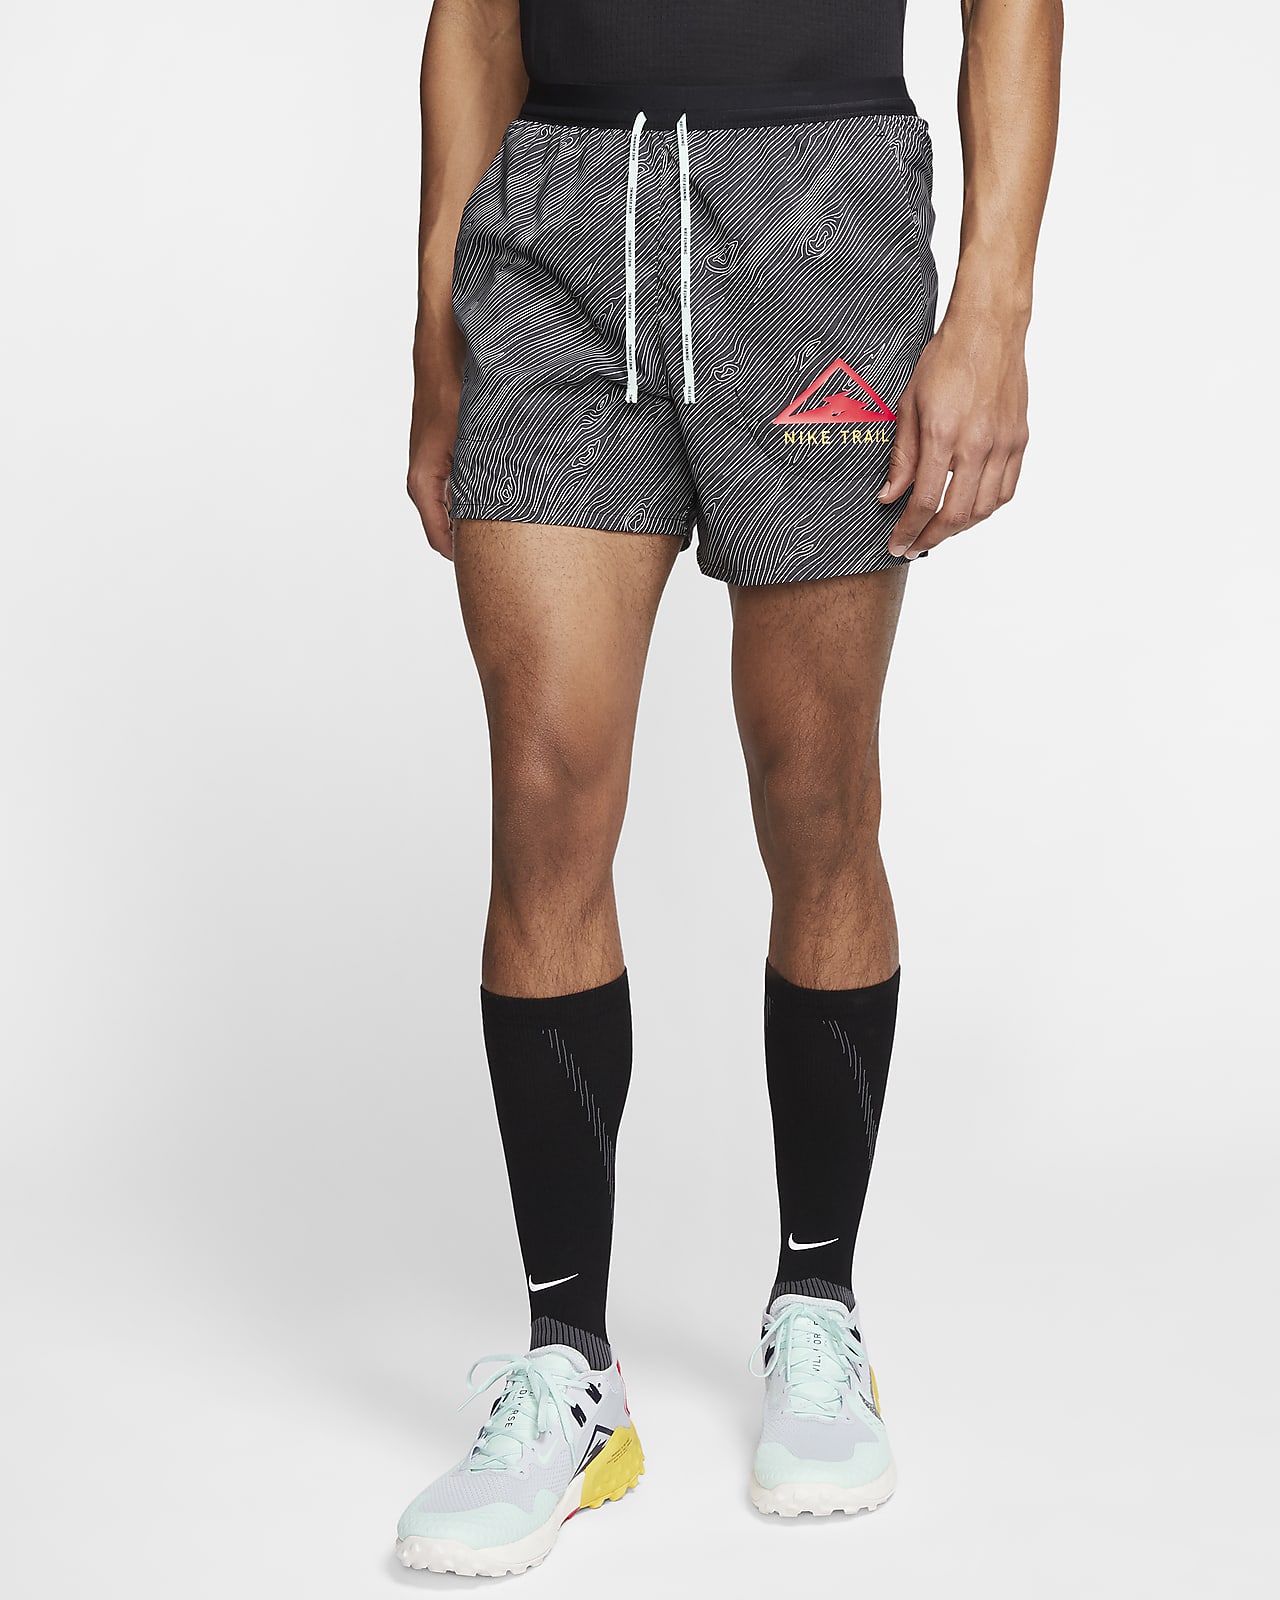 Shorts de trail running de 13 cm para hombre Nike Flex Stride. Nike.com